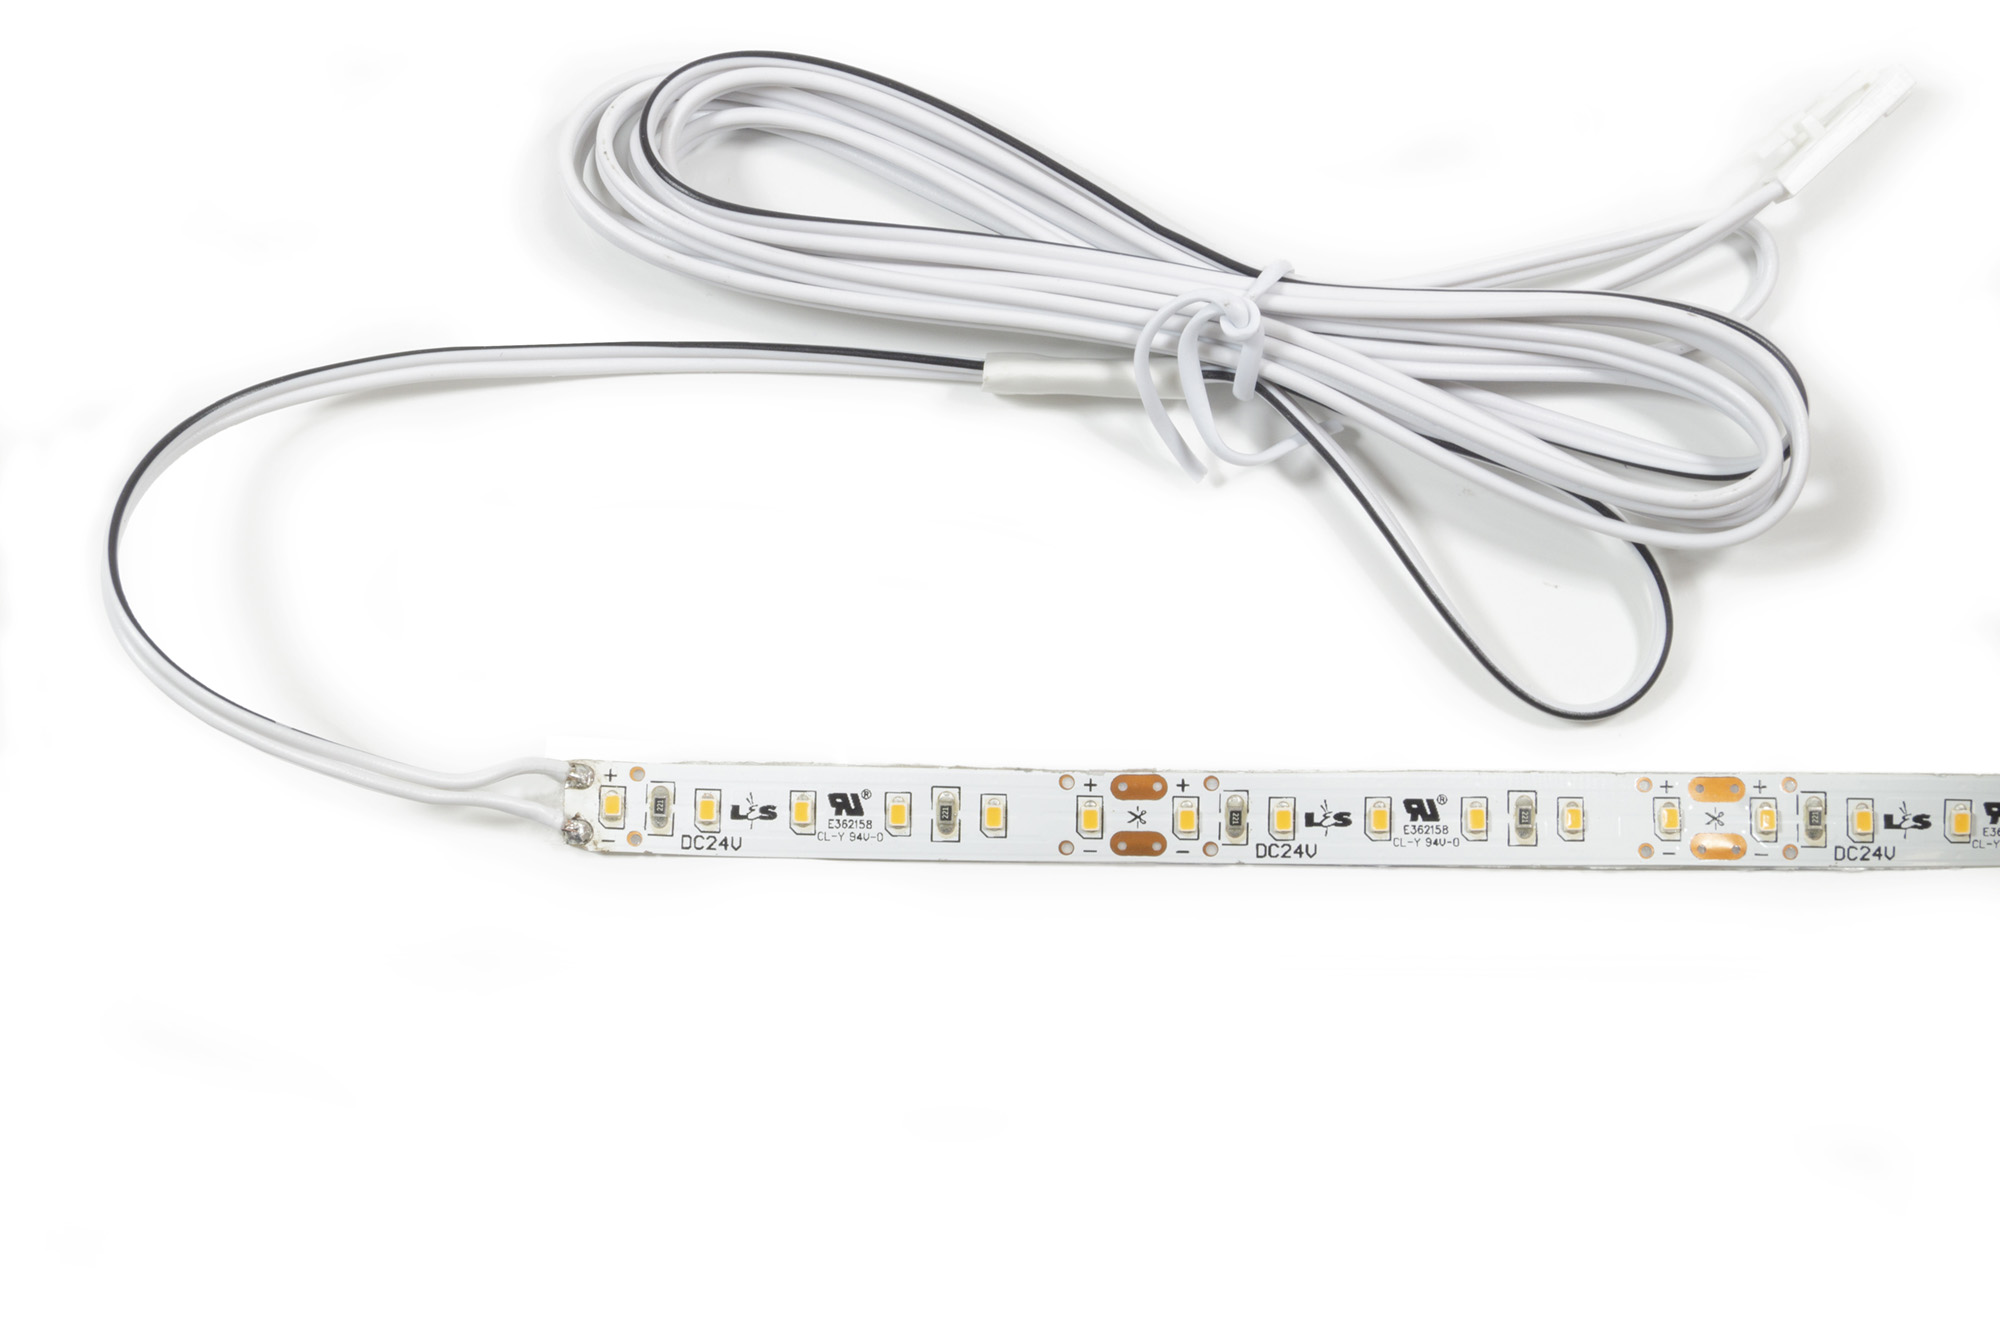 L&S LED Band Tudo 24V 8 mm 7,2W/m 120LED/m NW 4000 K 5 m 1,8m Zul.